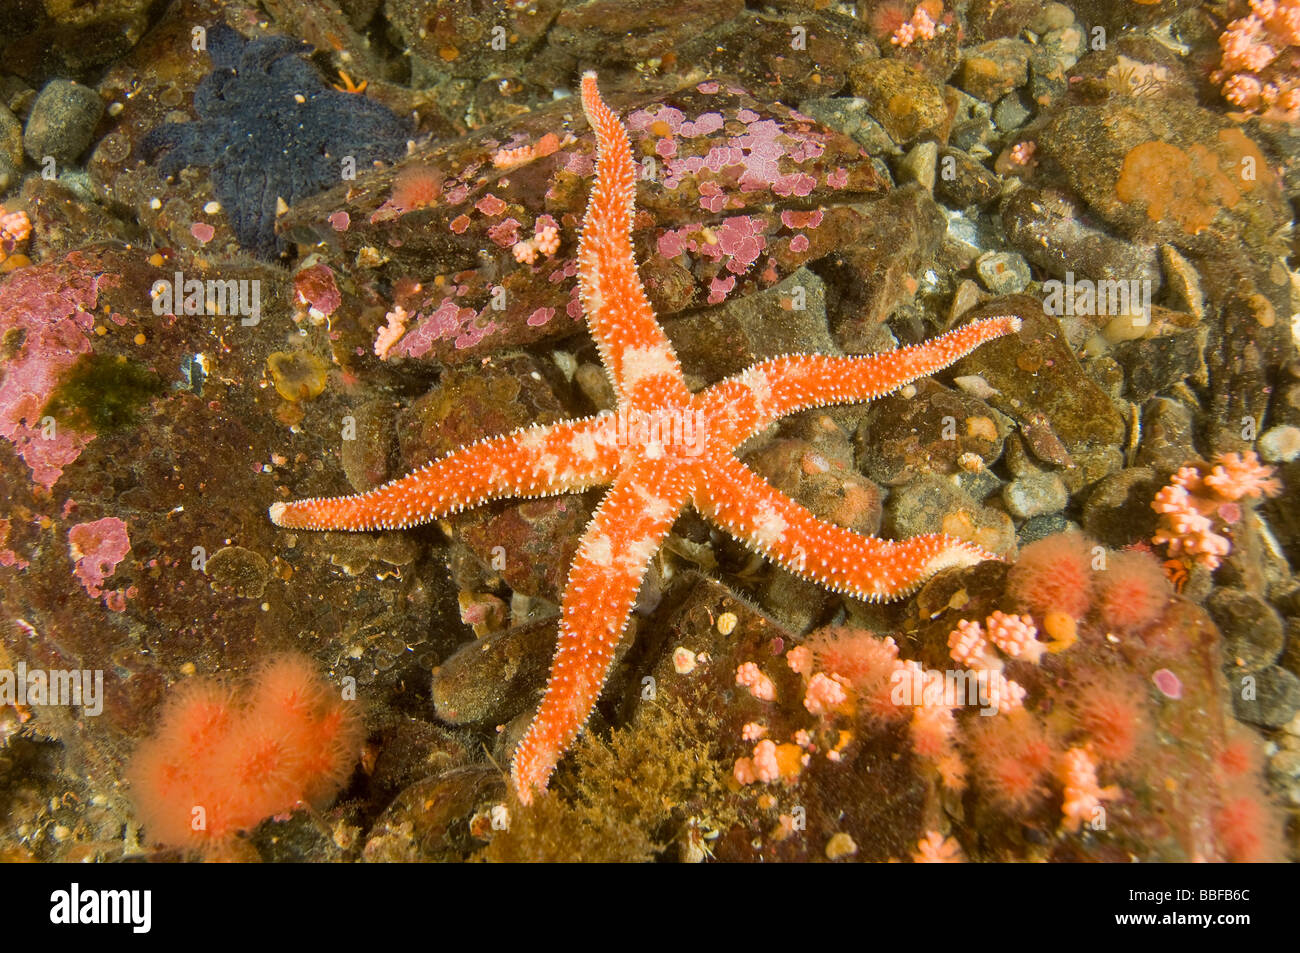 Rainbow Star étoile de Orthasterias koehleri sud-est de l'Alaska Banque D'Images